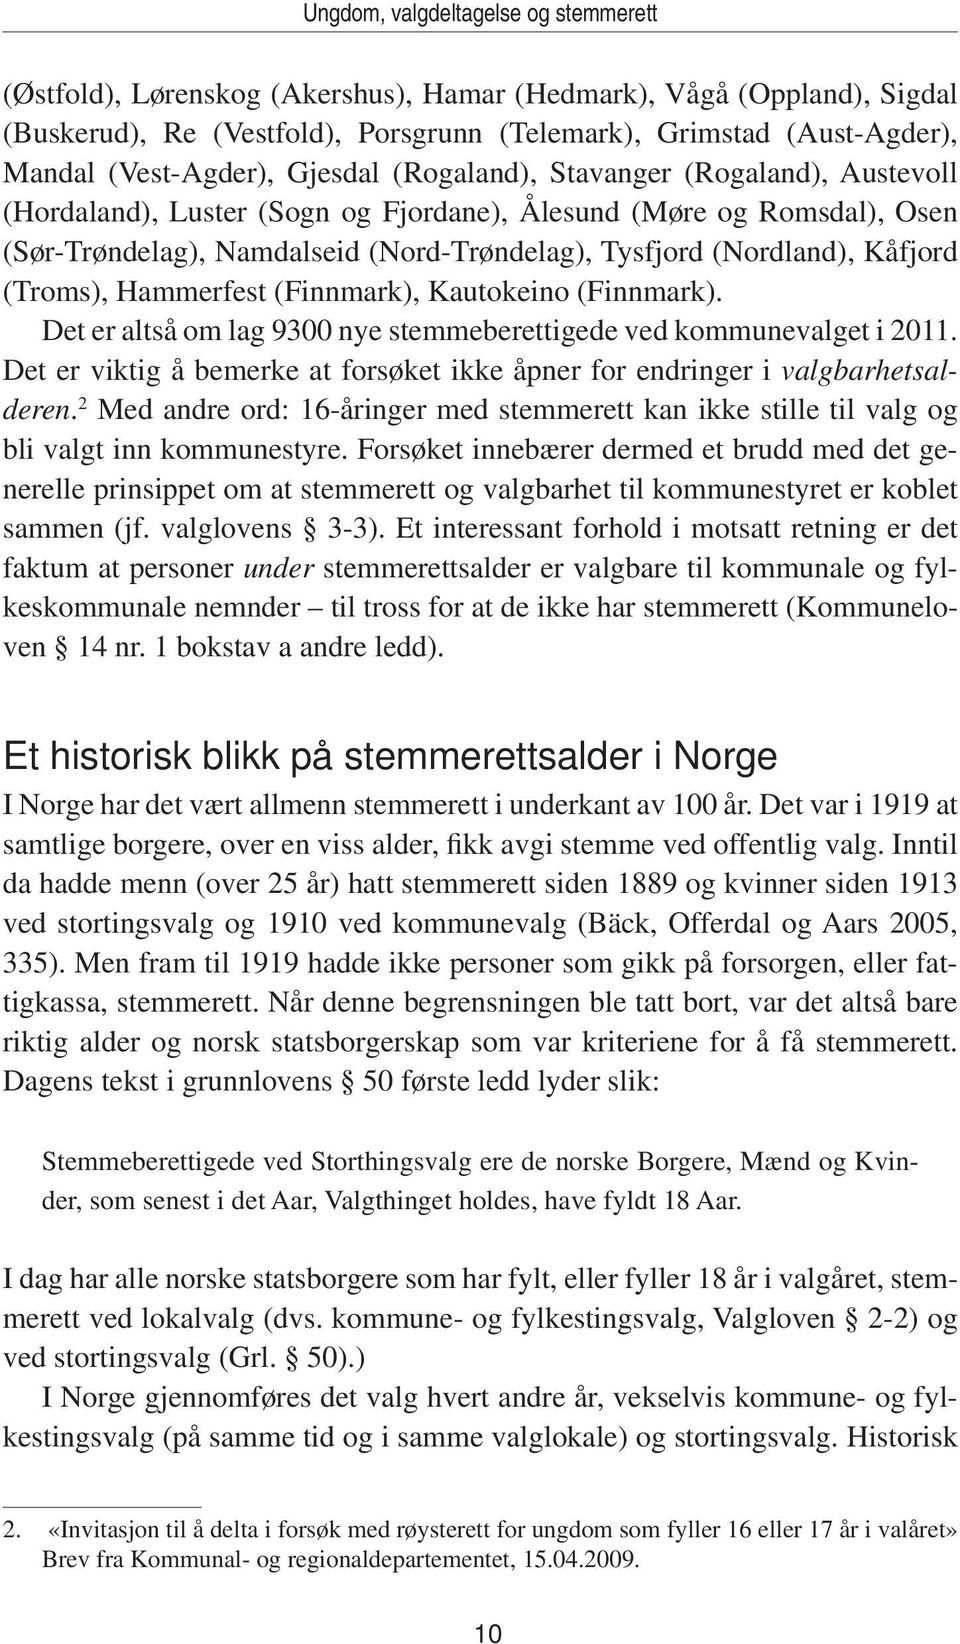 (Nordland), Kåfjord (Troms), Hammerfest (Finnmark), Kautokeino (Finnmark). Det er altså om lag 9300 nye stemmeberettigede ved kommunevalget i 2011.